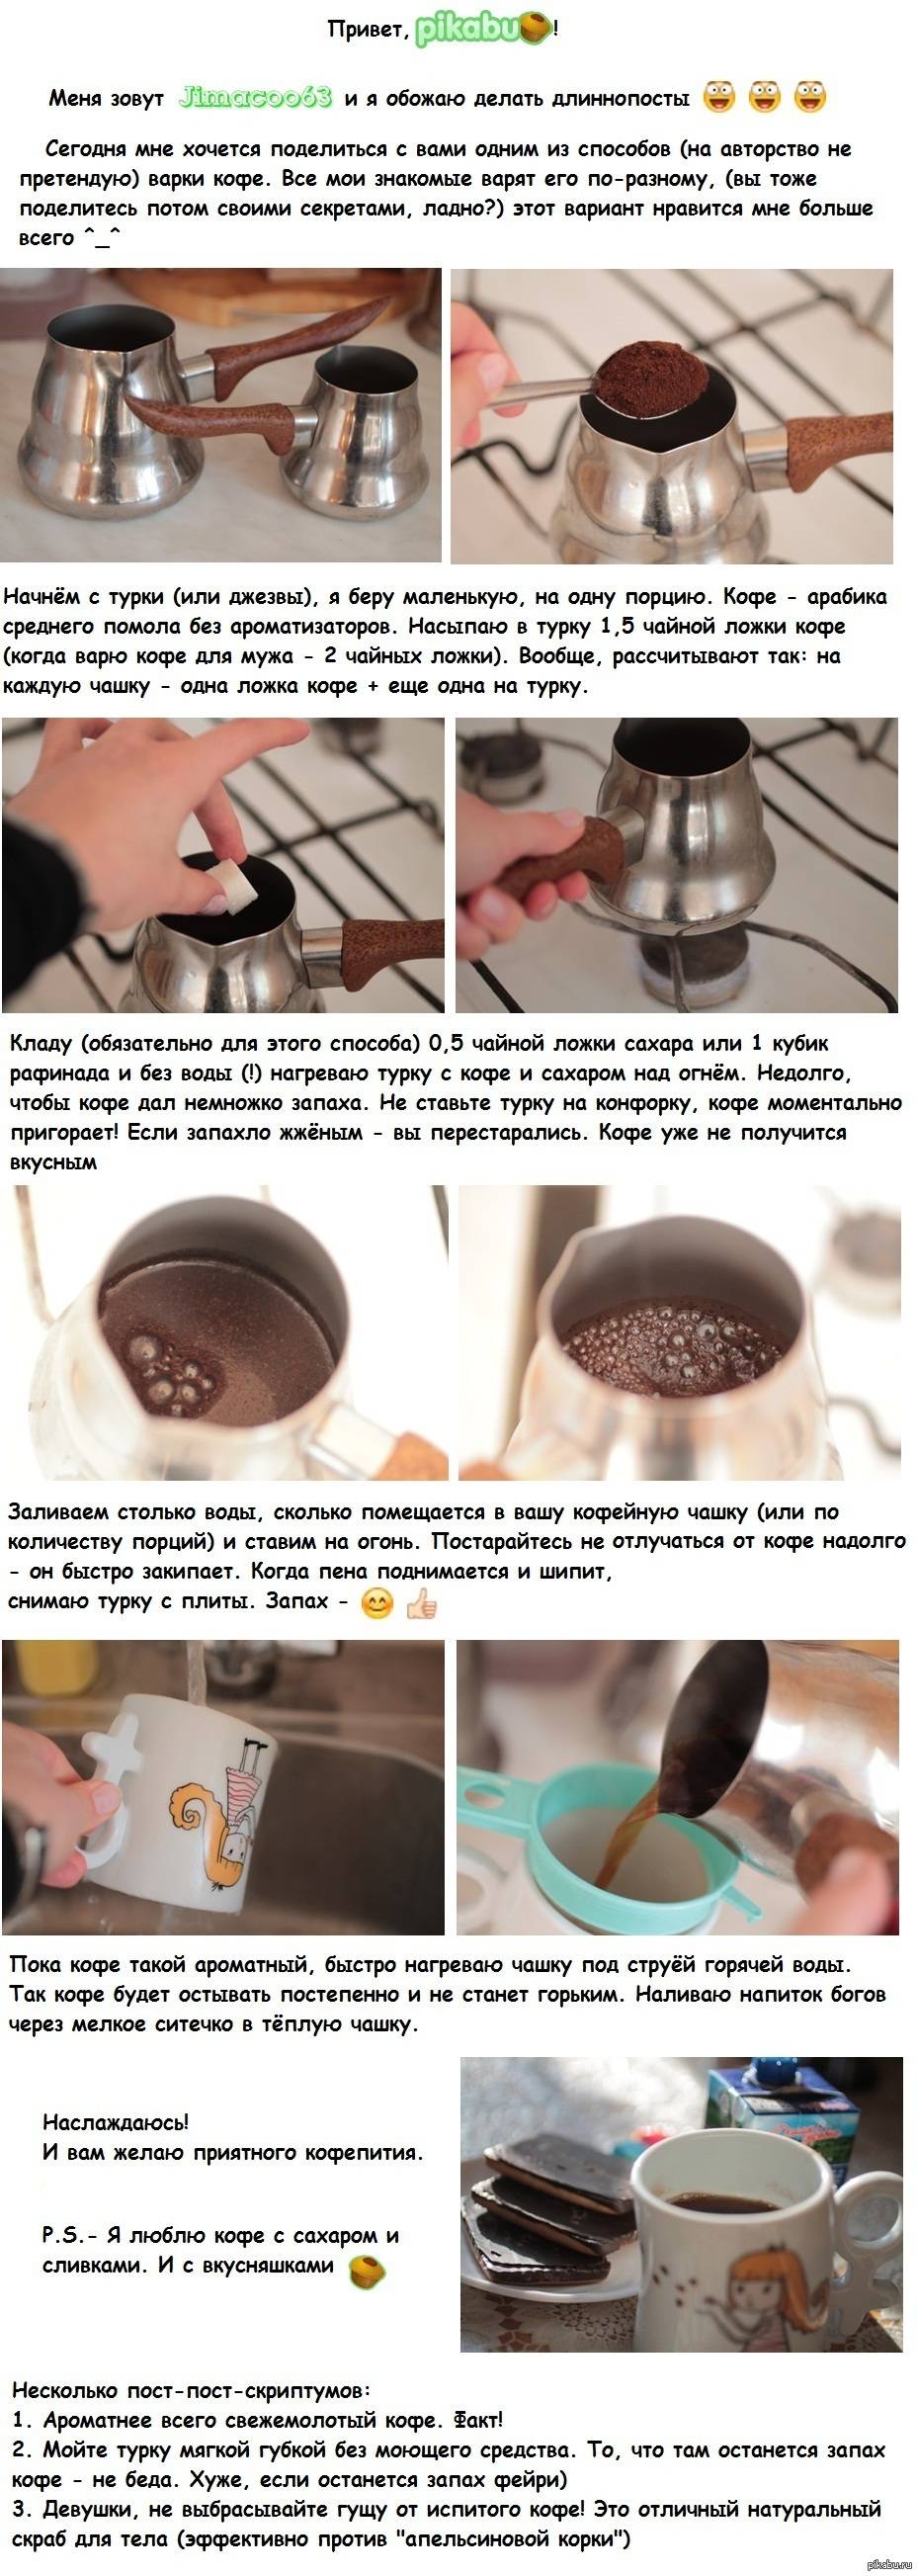 Как заваривать вкусный кофе разными способами?